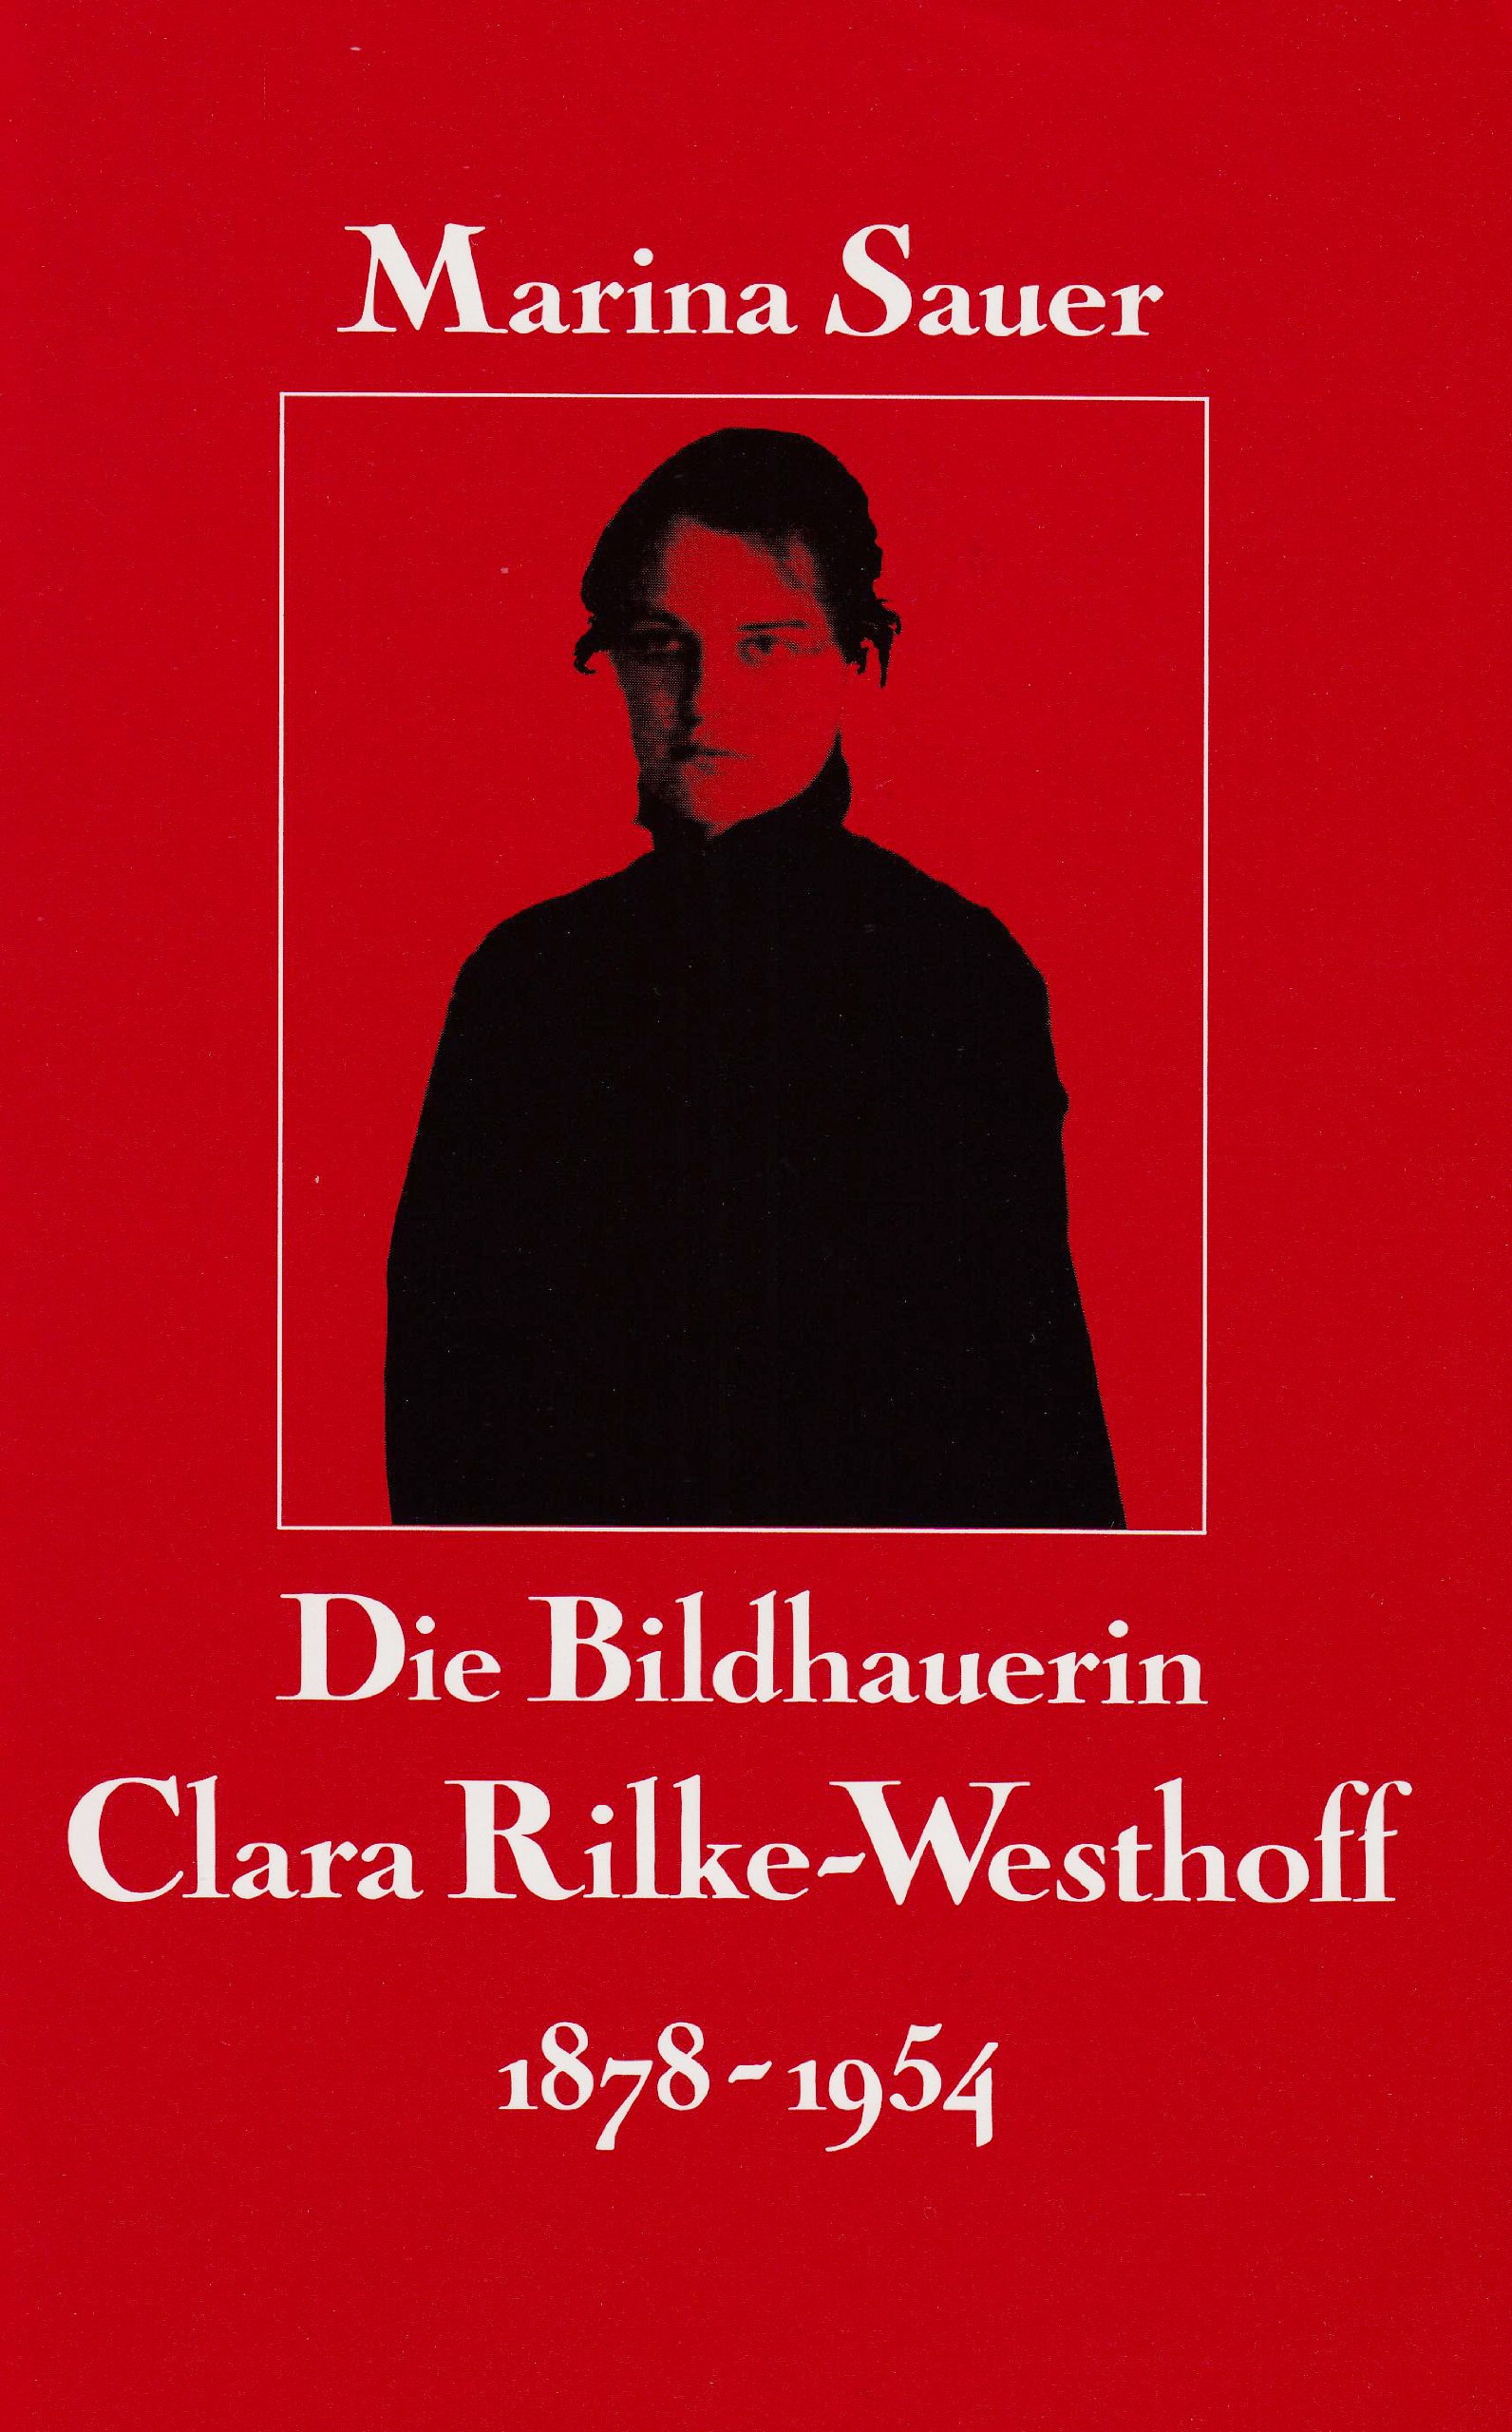 Die Bildhauerin Clara Rilke-Westhoff